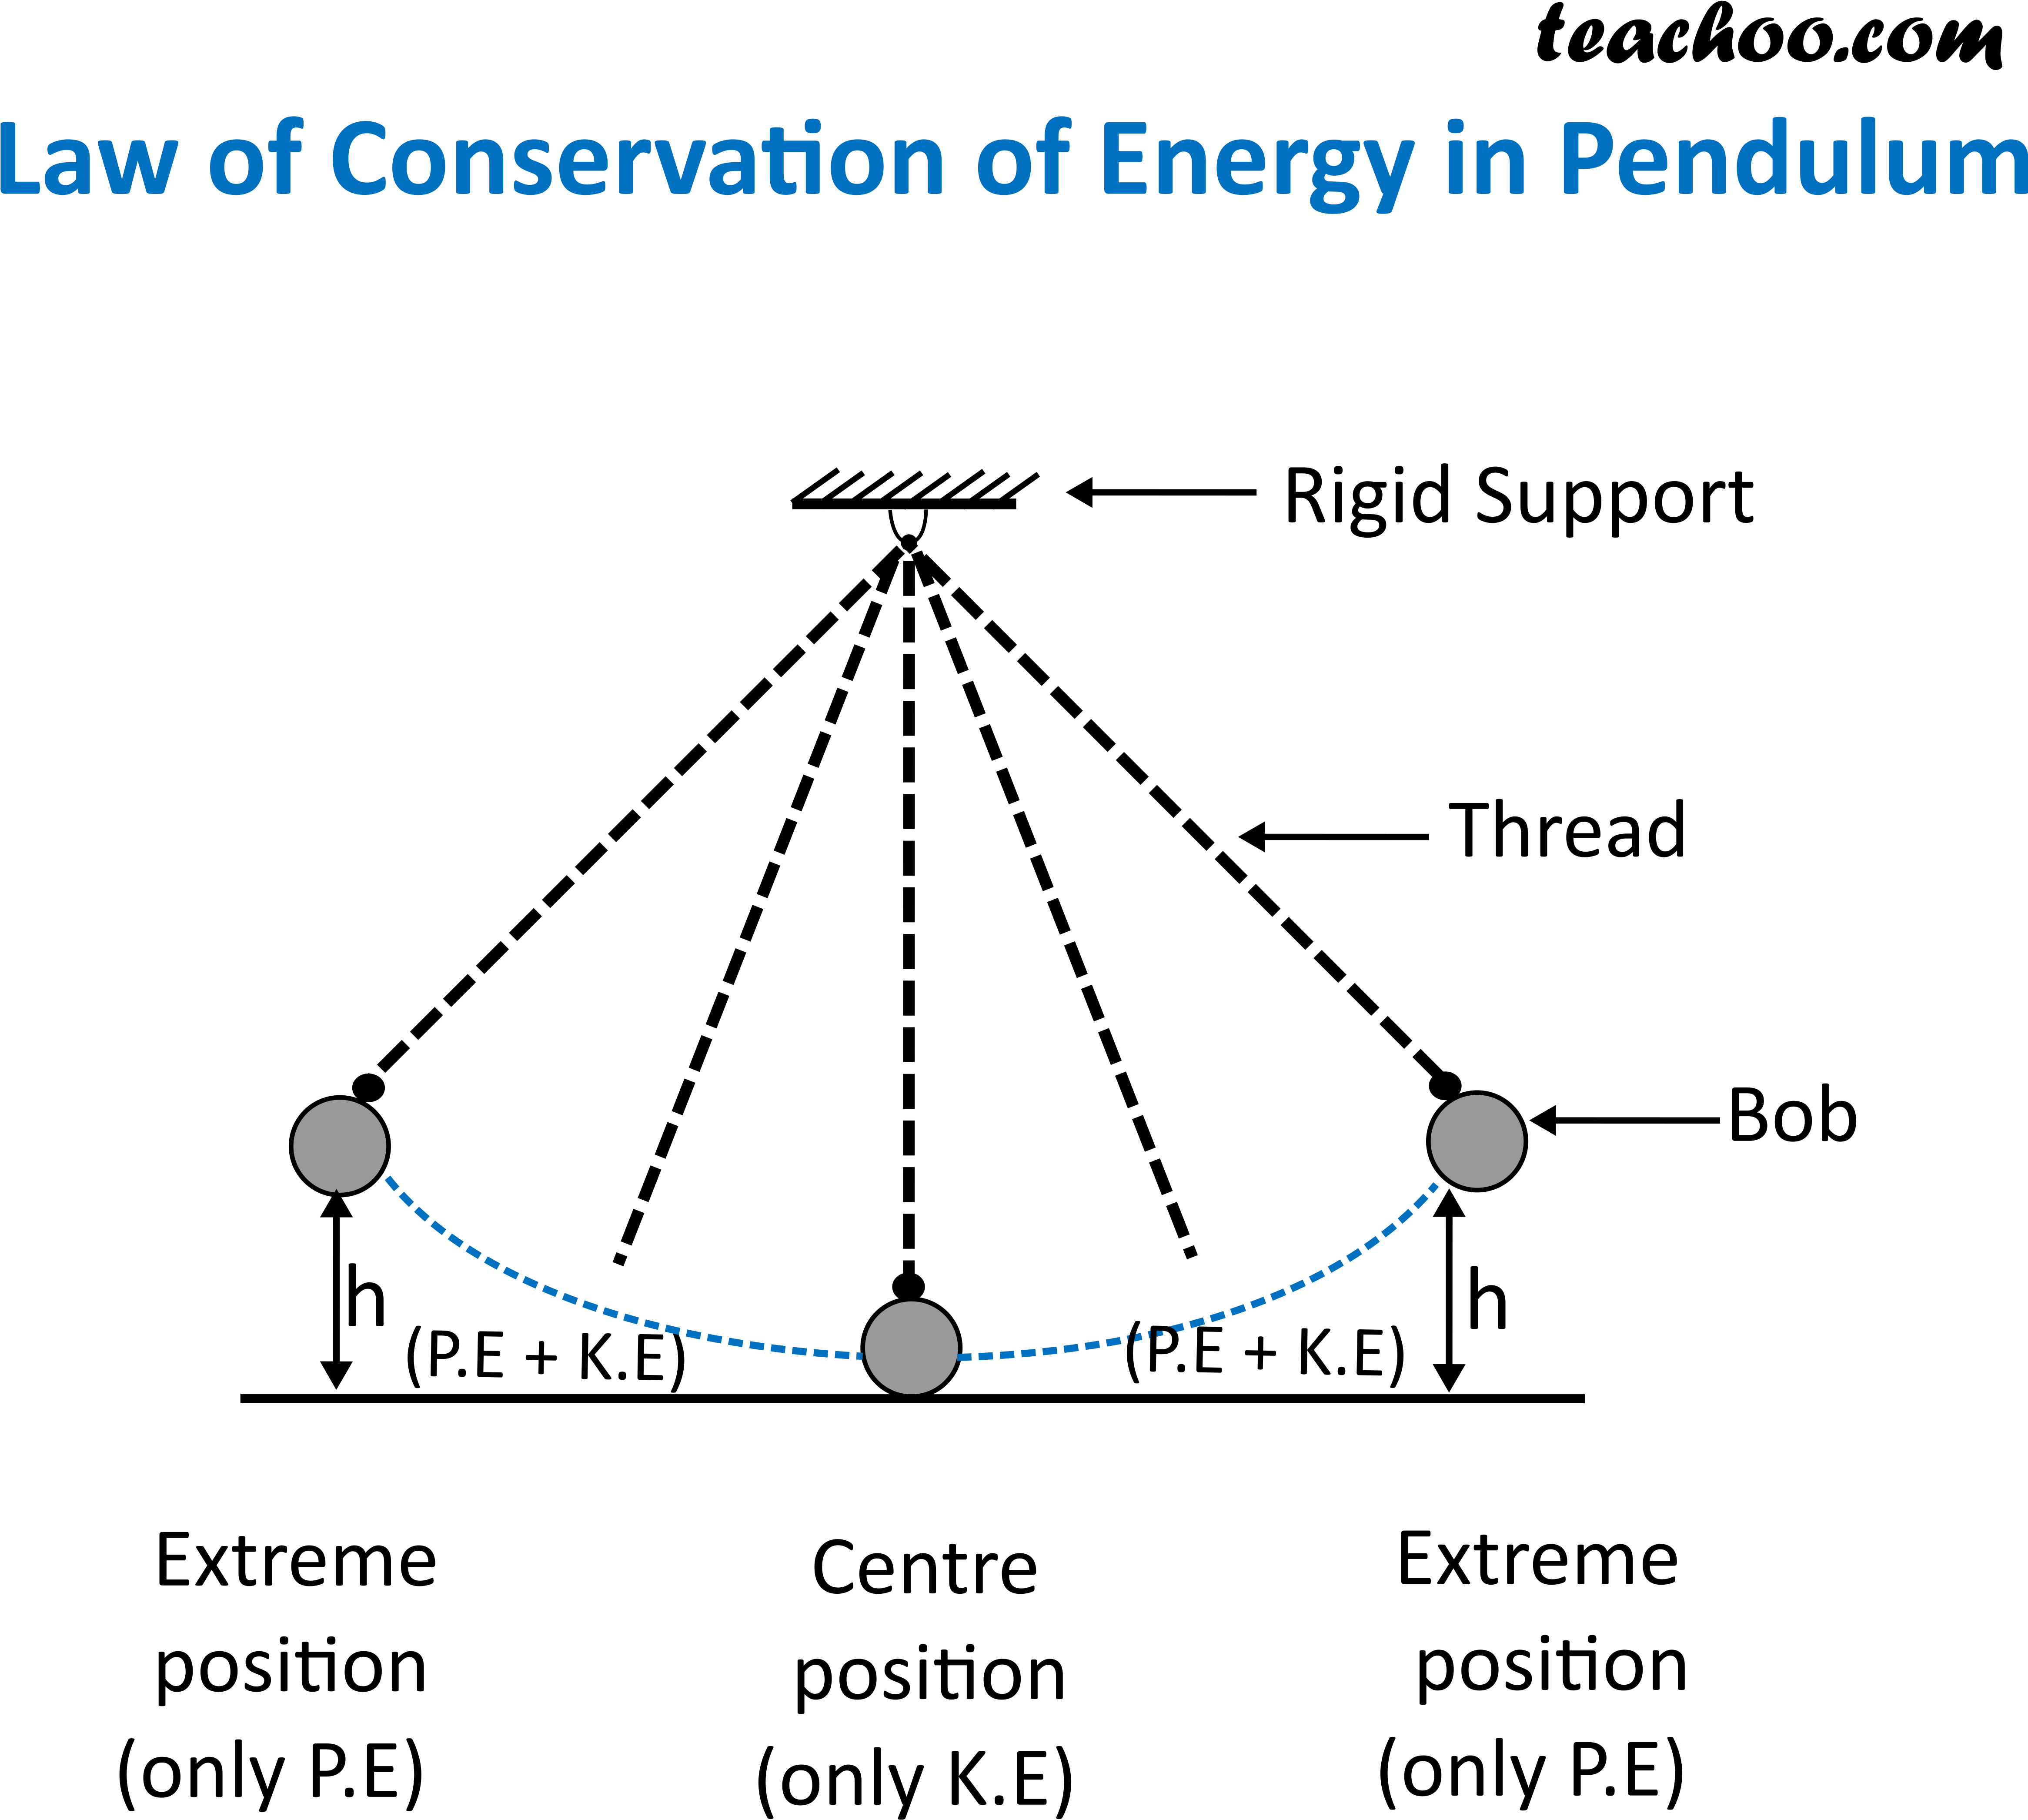 Pendulum Energy Conservation Diagram